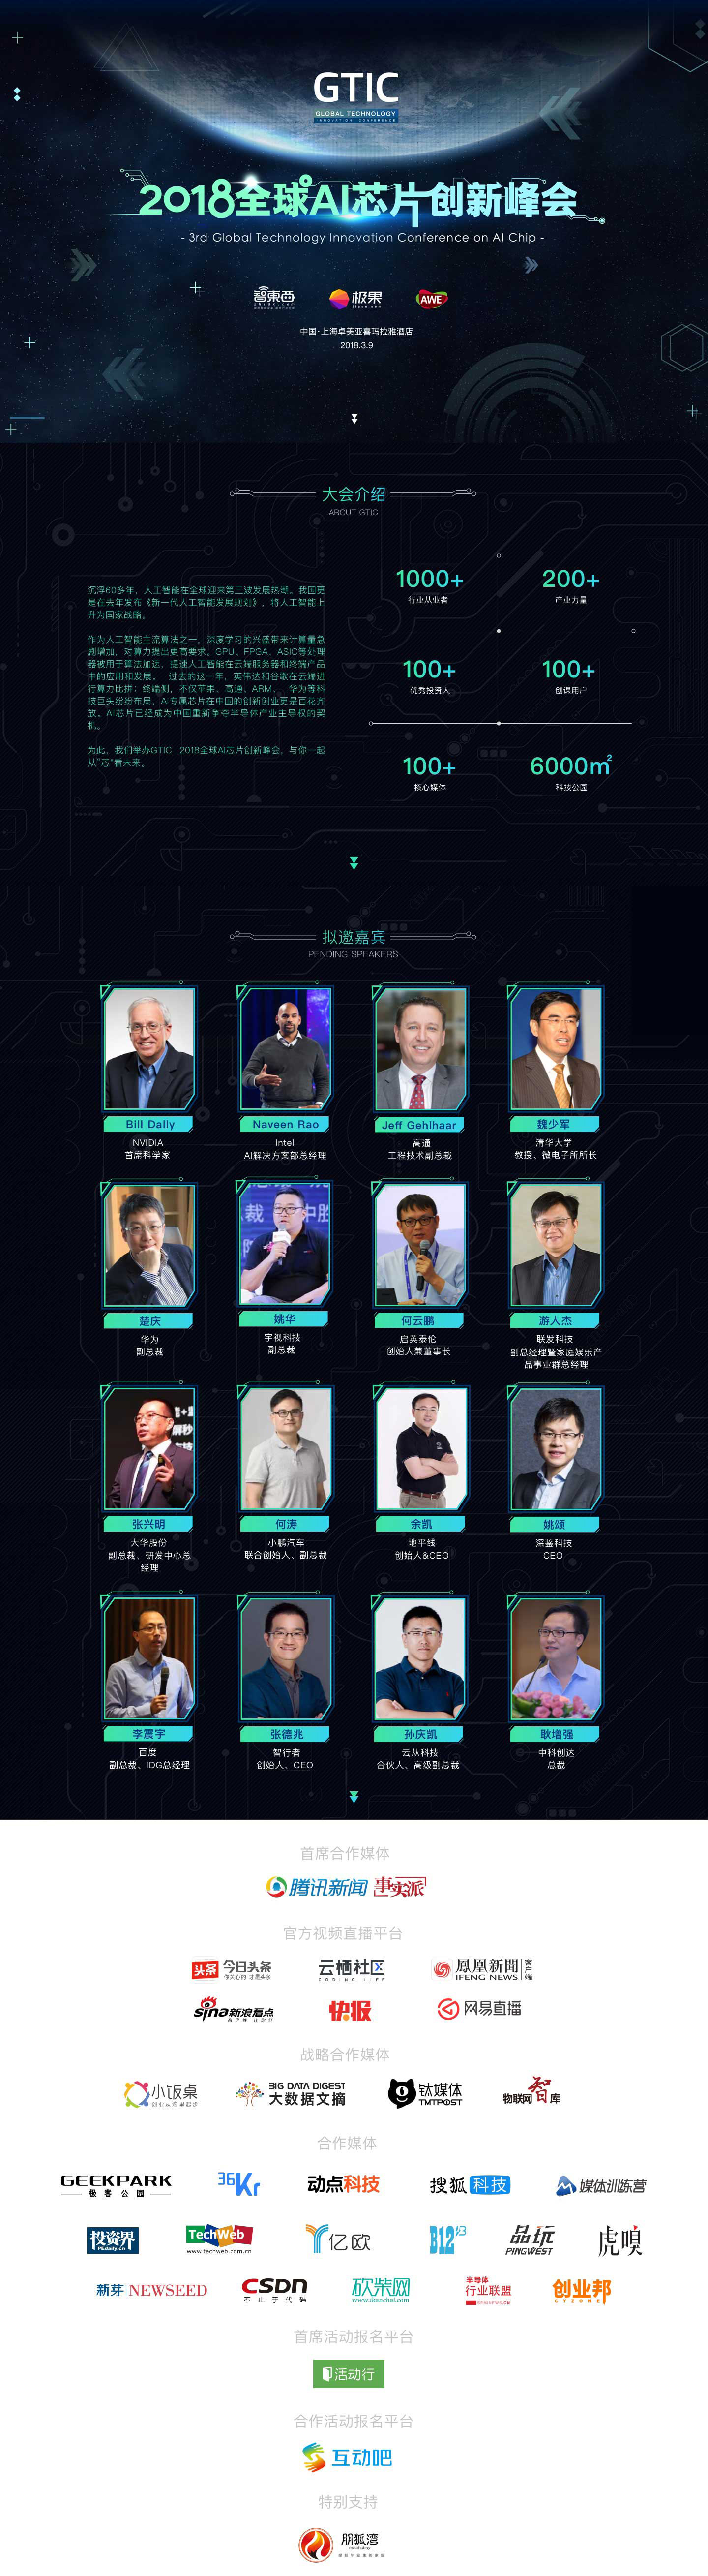 GTIC 2018全球AI芯片创新峰会 | 智东西（人工智能）